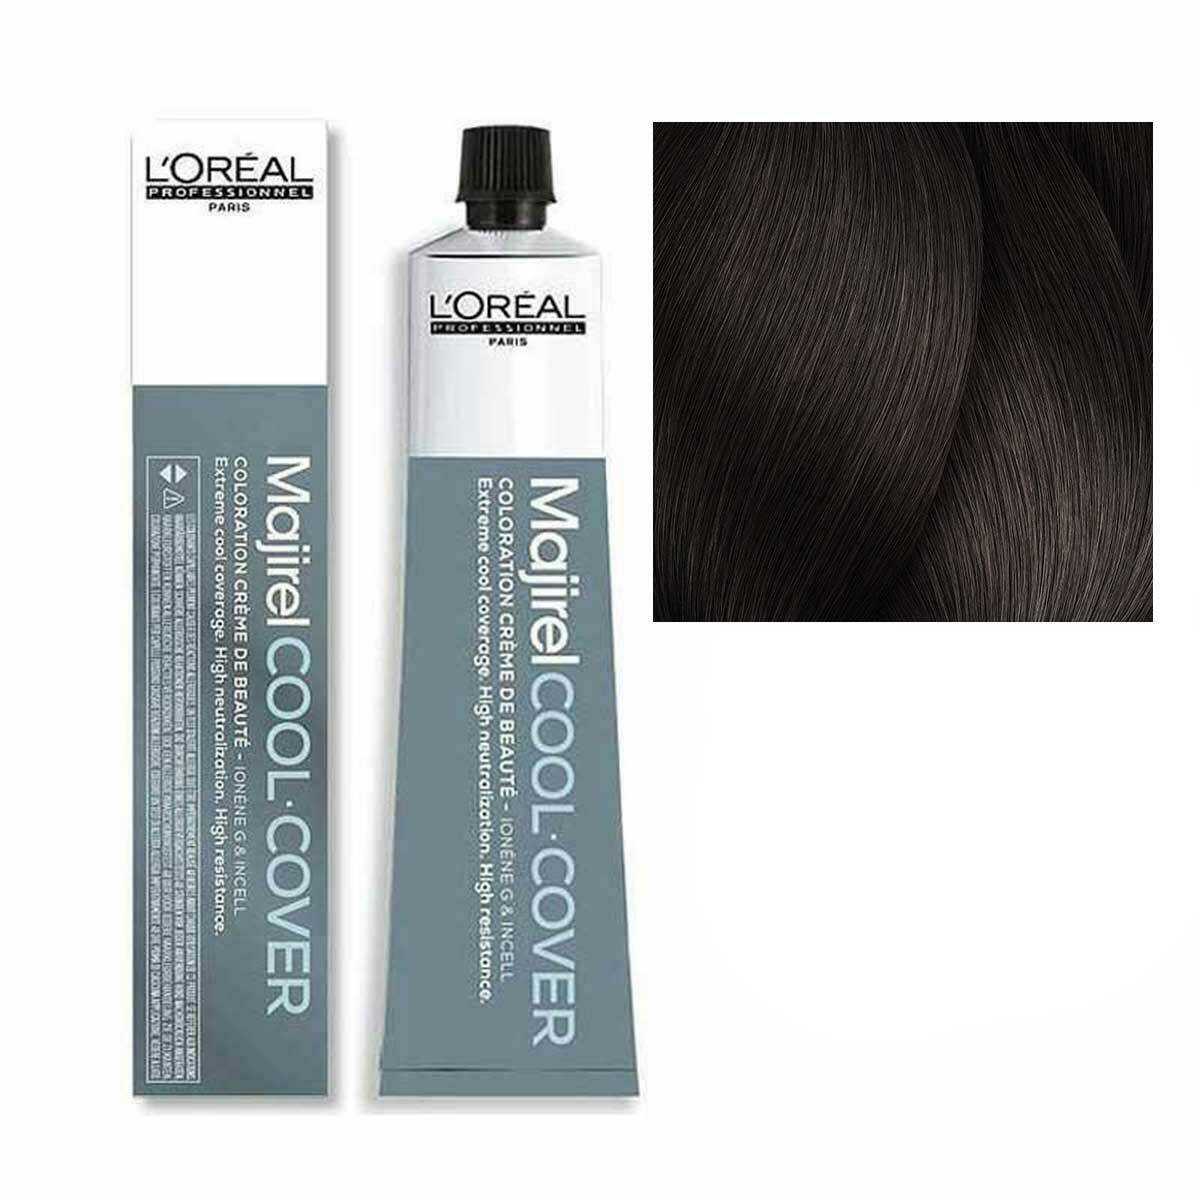 Loreal Majirel Cool Cover Farba do włosów - 5.18 Jasny brąz popielaty - mokka, chłodne odcienie 50ml